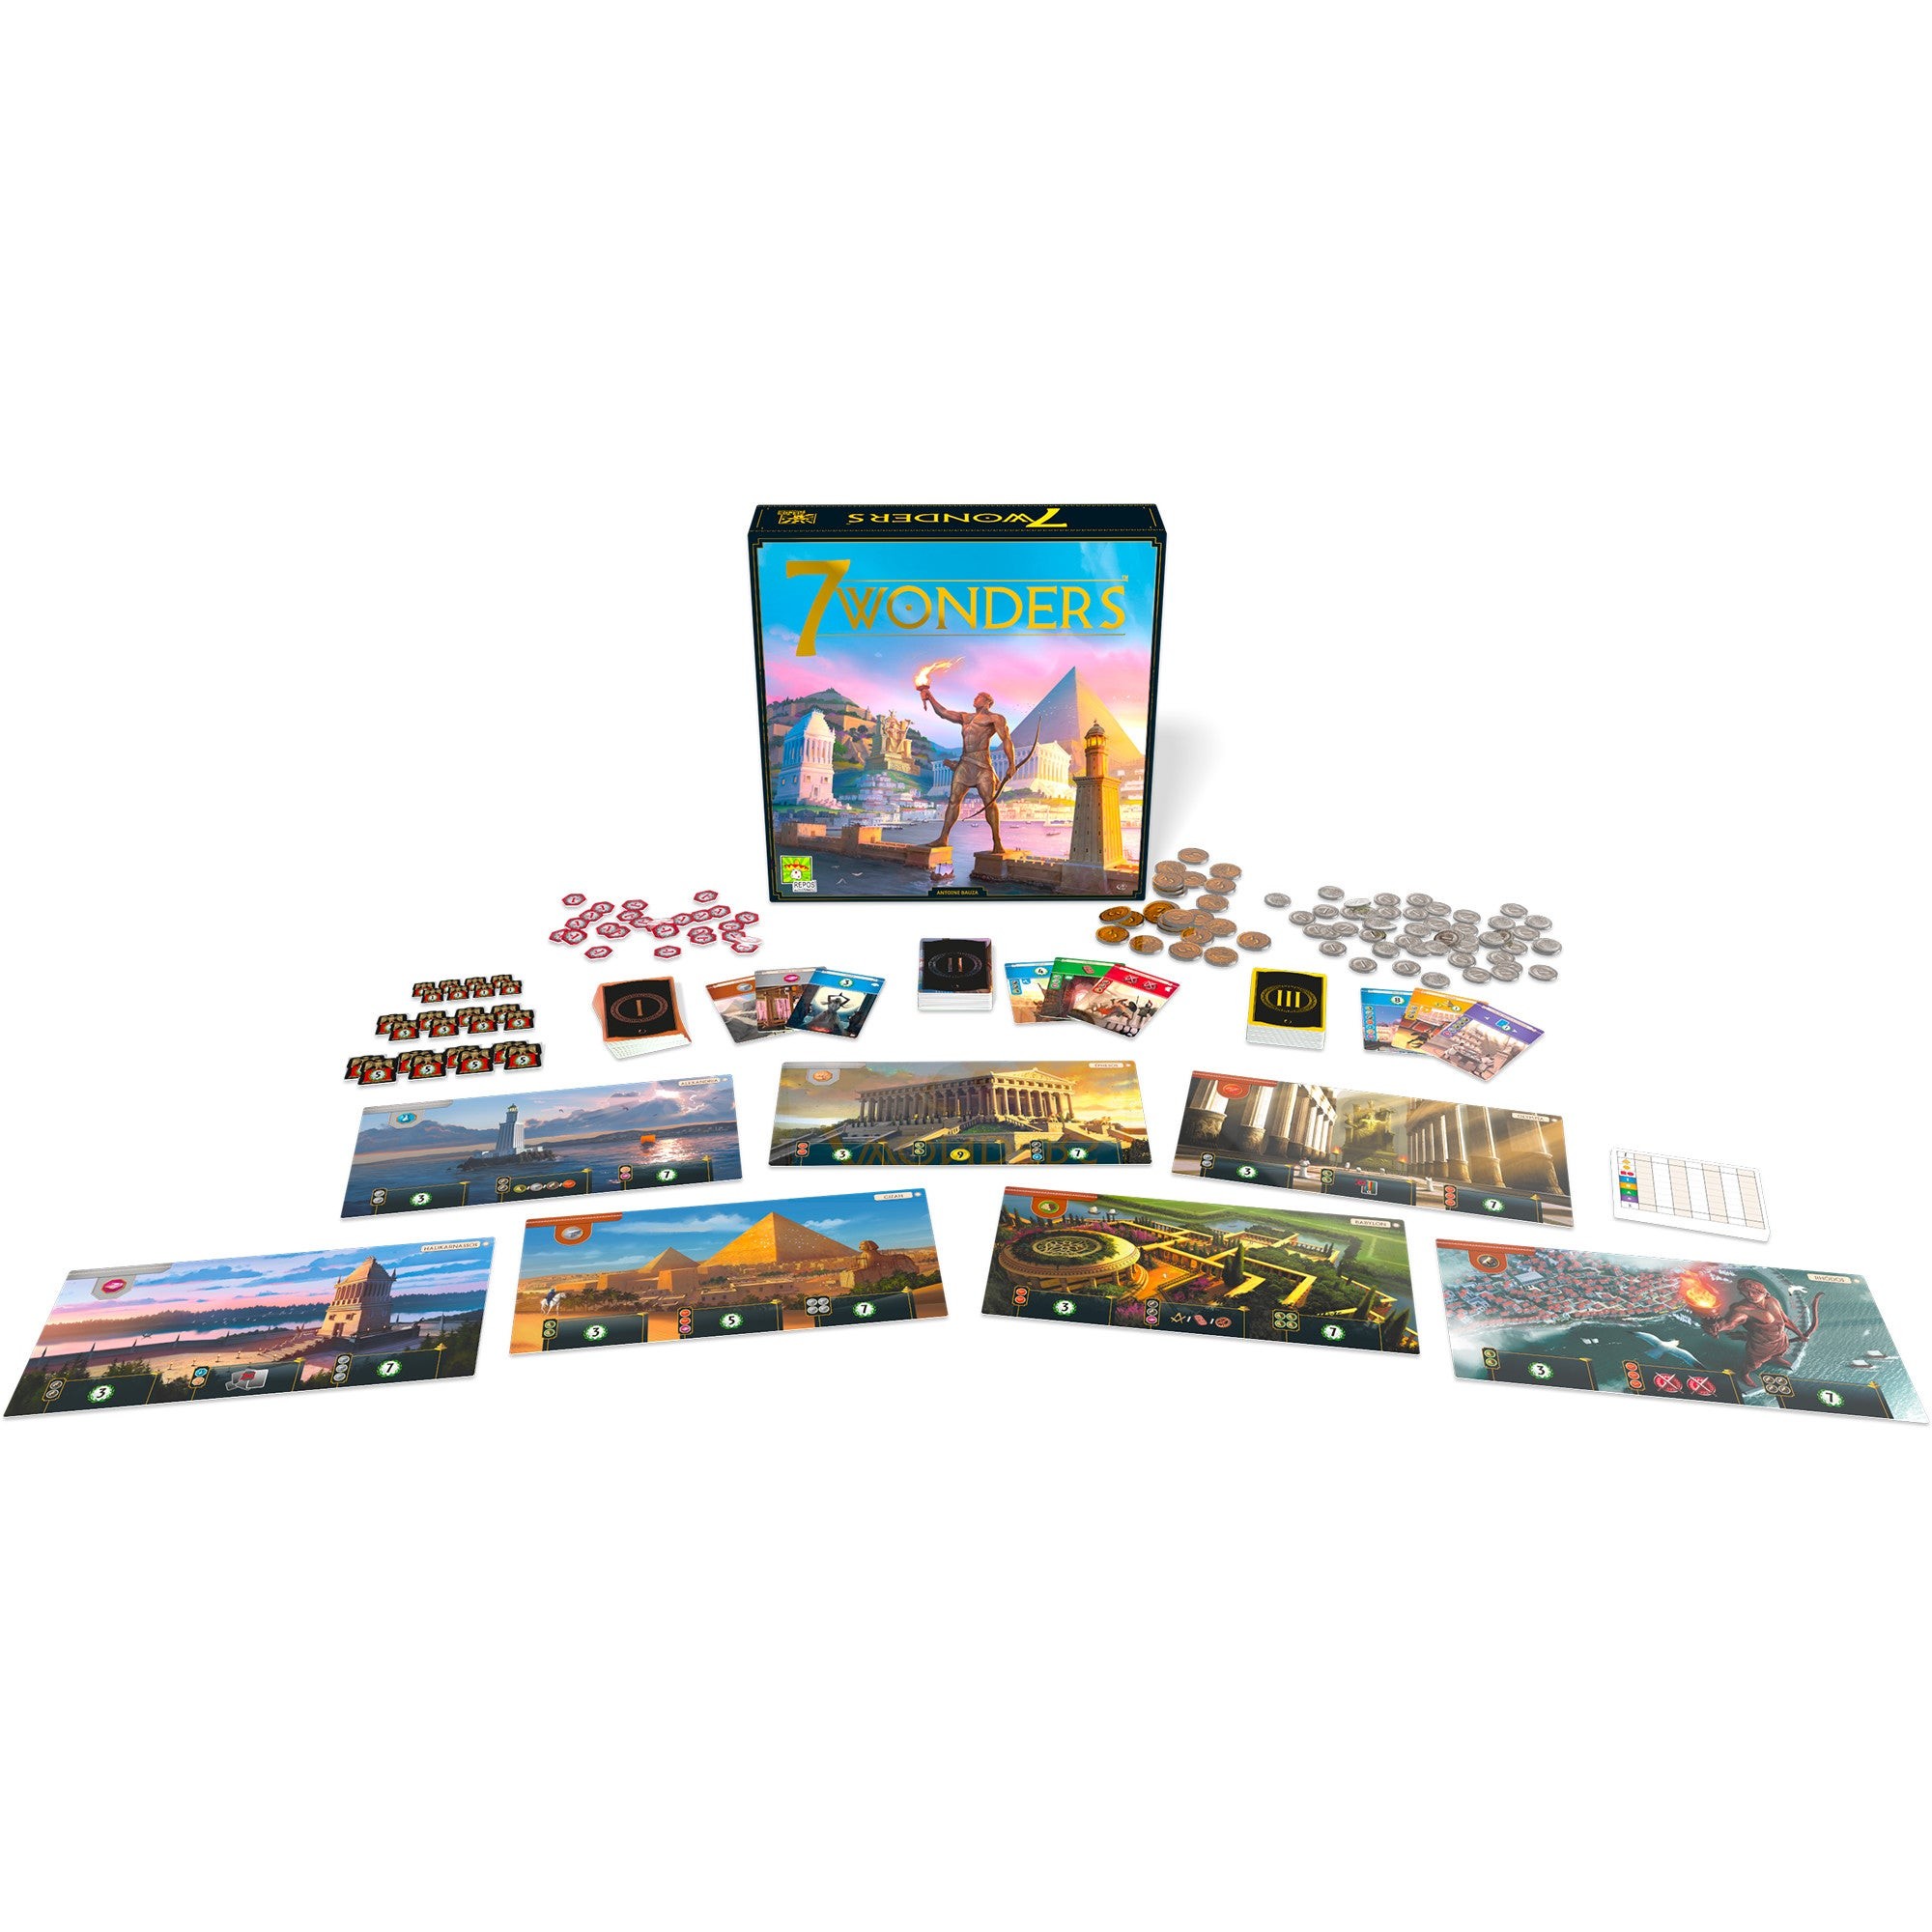 7 Wonders Board Game Gen. 2